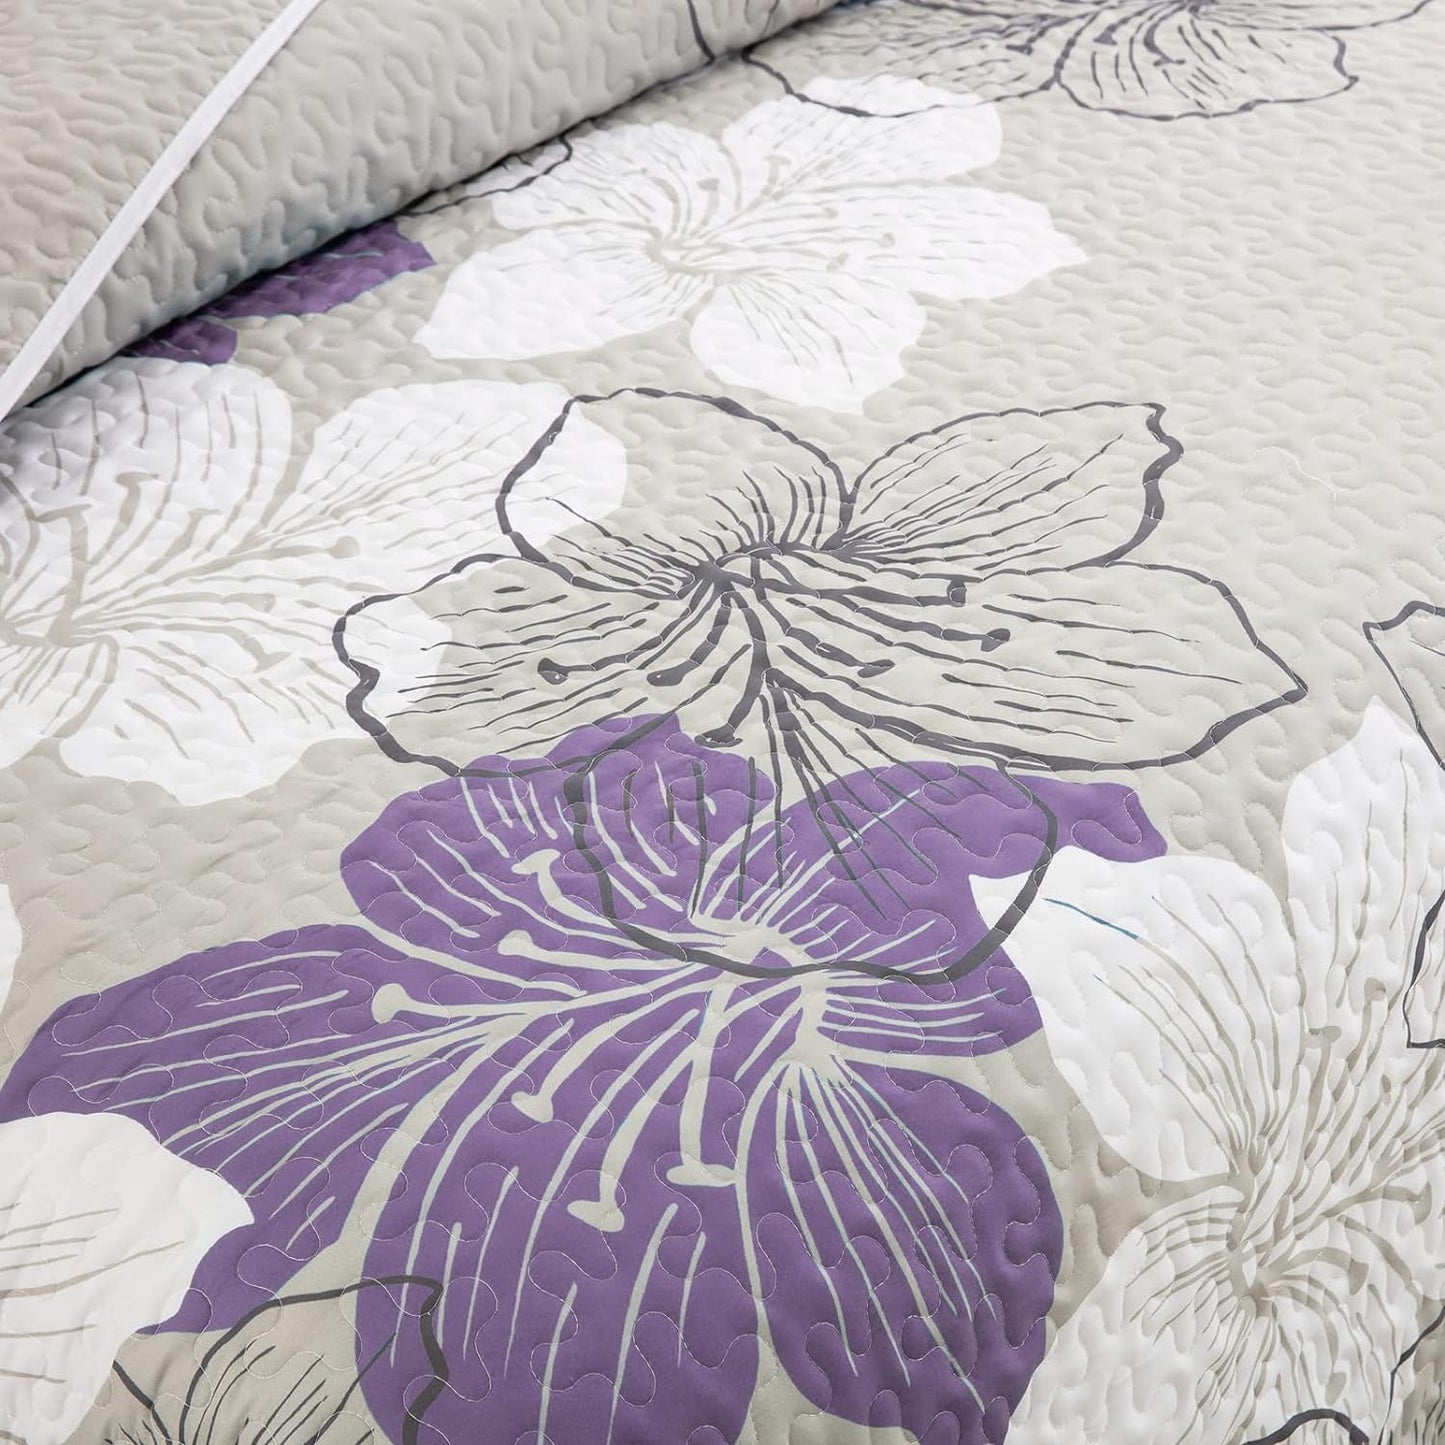 Purple Bohemian Floral 3 Piece Bedding Quilt Set